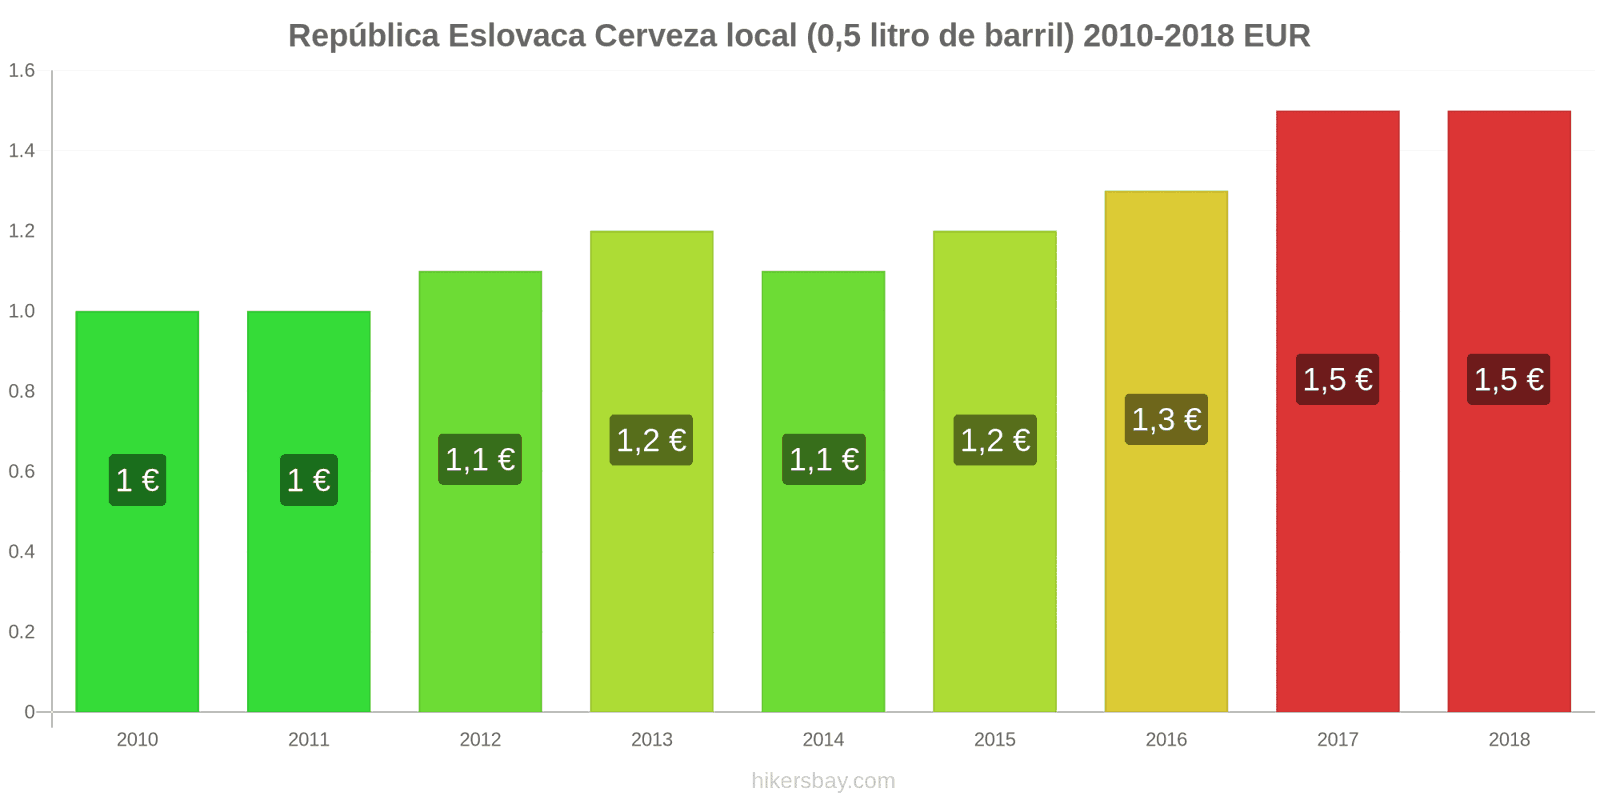 República Eslovaca cambios de precios Cerveza de barril (0,5 litros) hikersbay.com